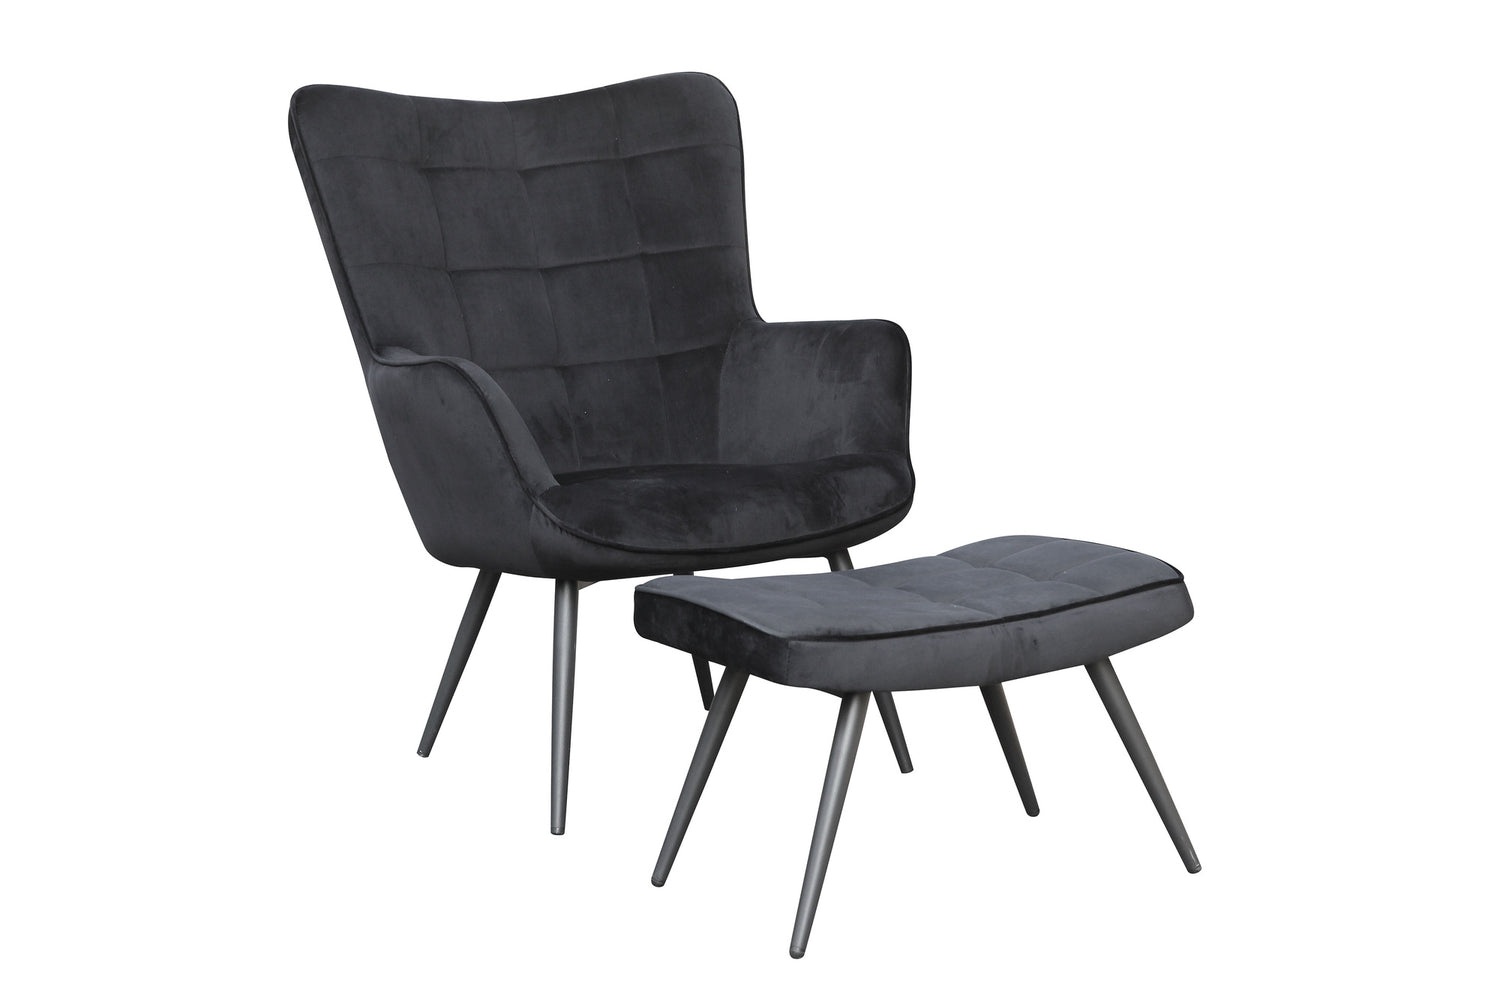 UTA Sessel, sandfarben schwarz, Gestell schwarz, – grau, in in byLIVING grün oder